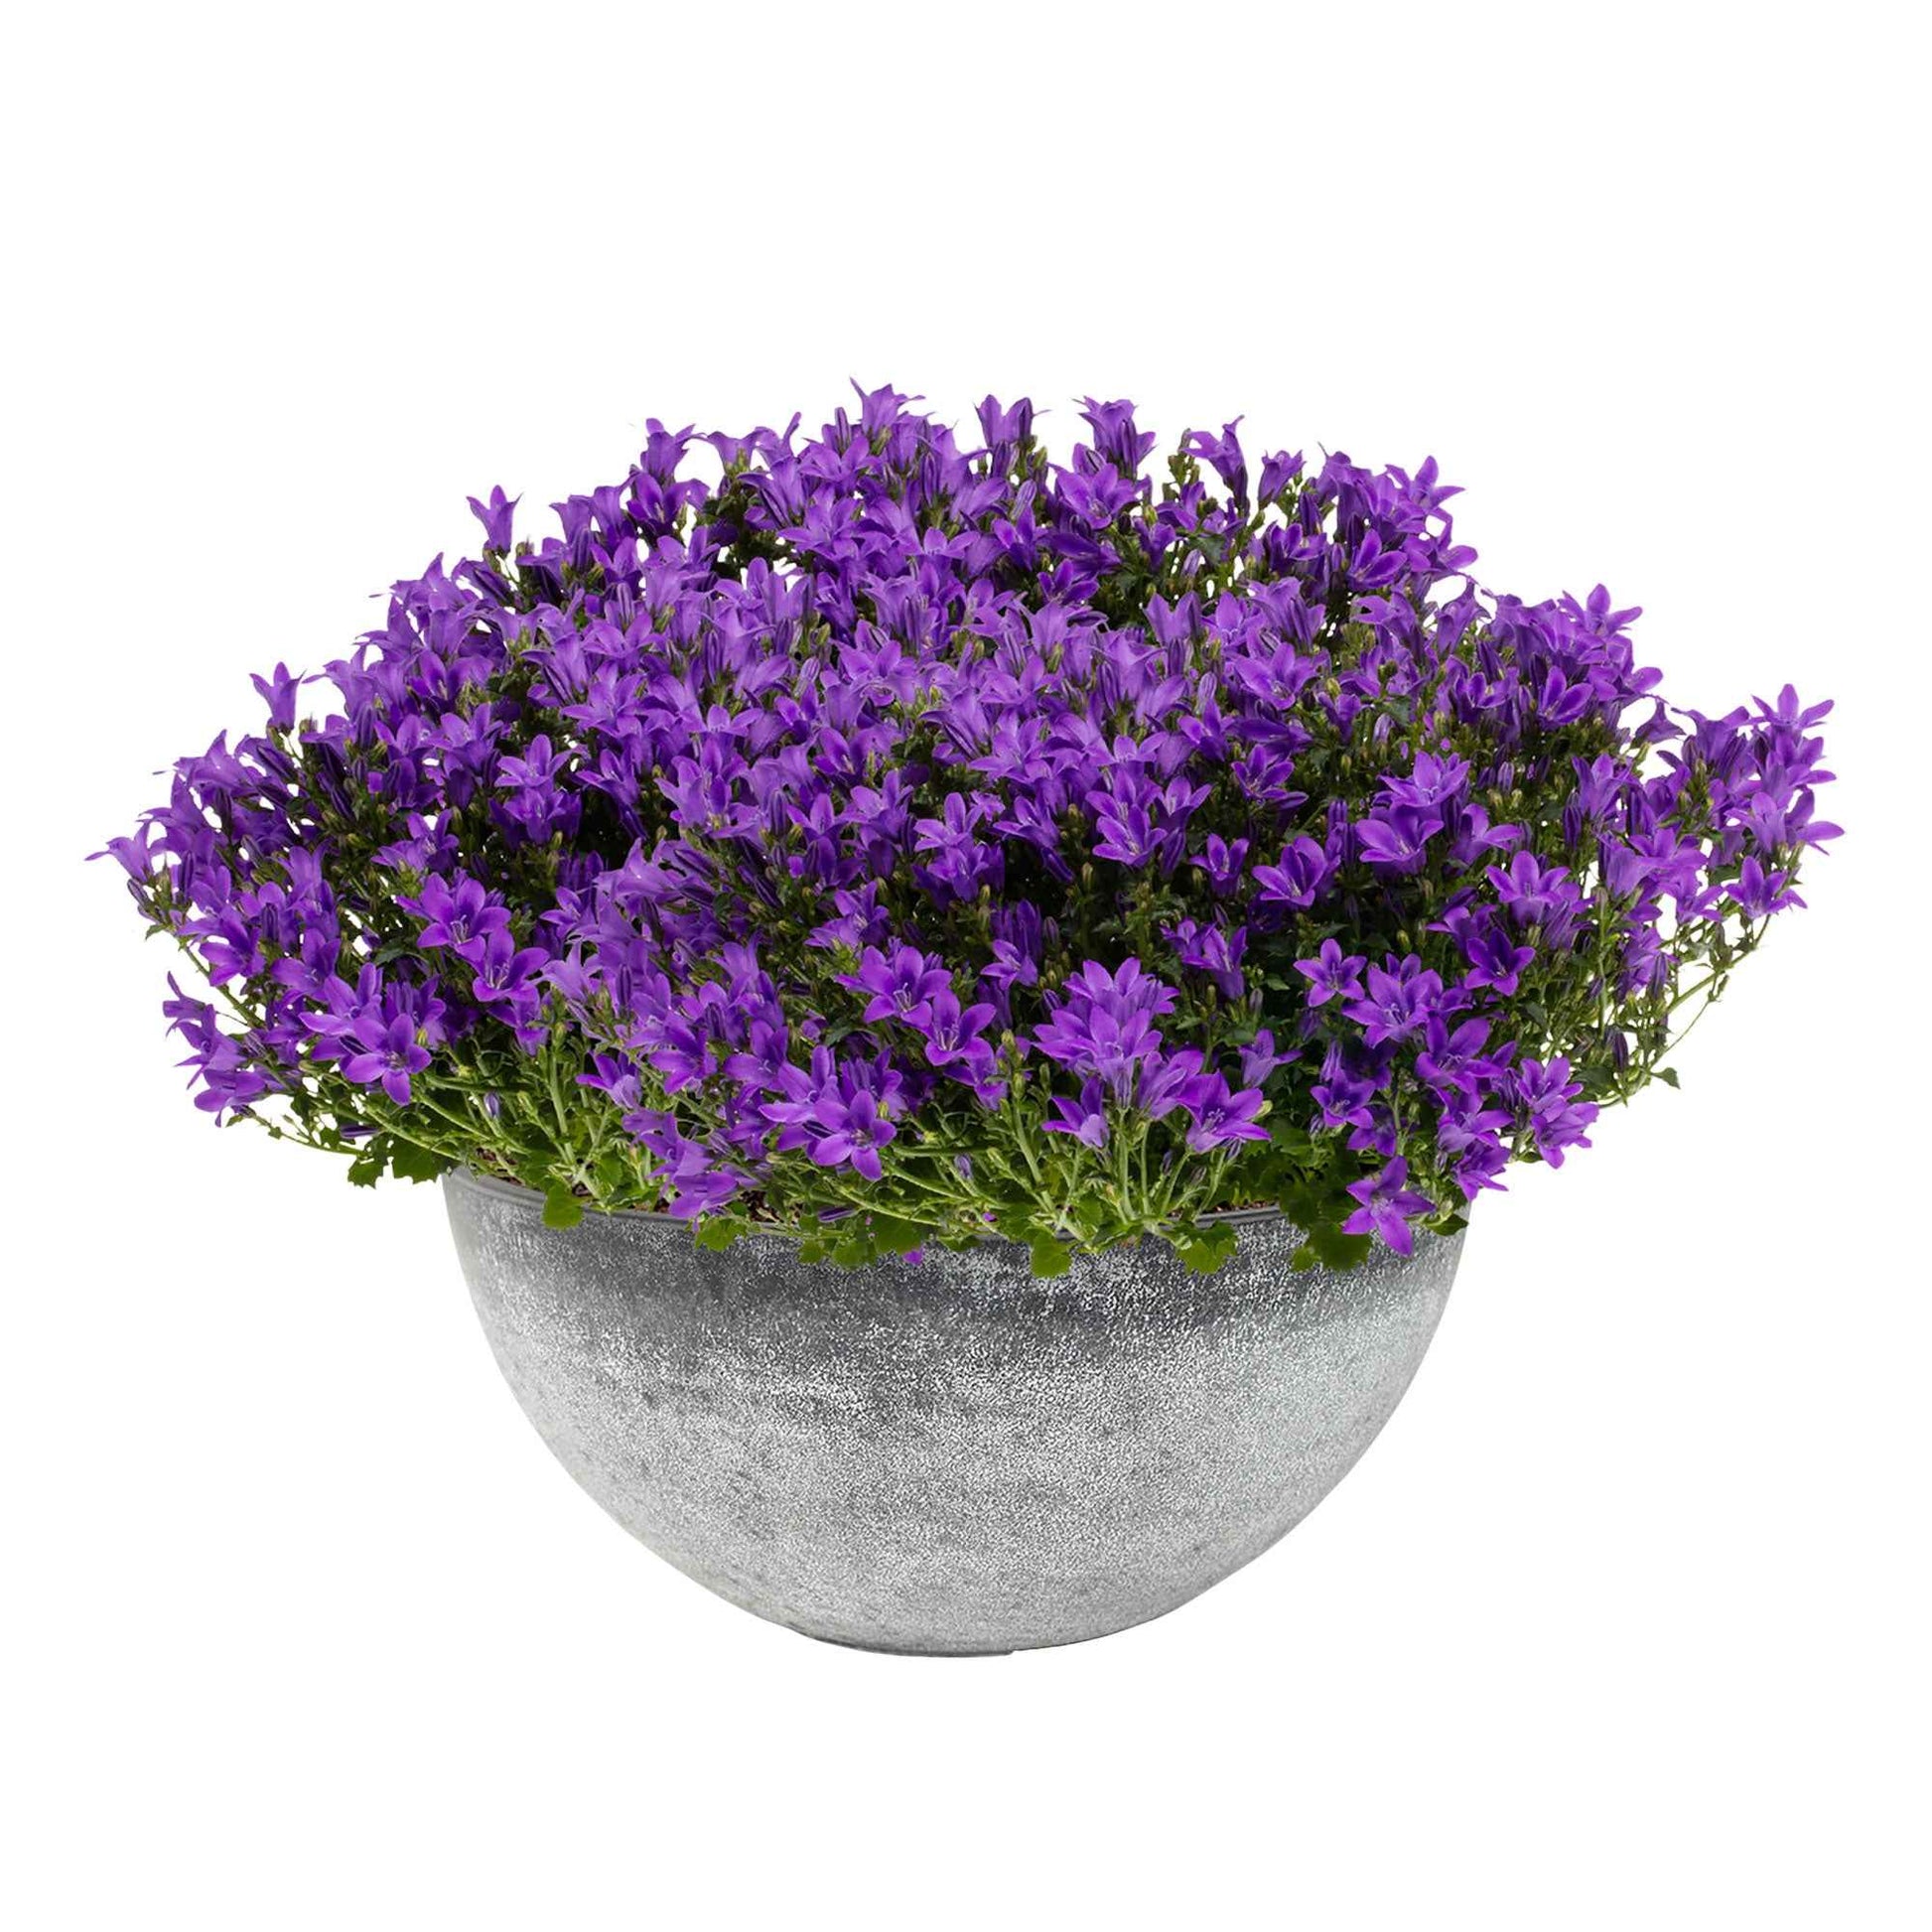 3x Glockenblume Campanula 'Ambella Intense Purple' lila inkl. Schale grau - Alle Gartenstauden